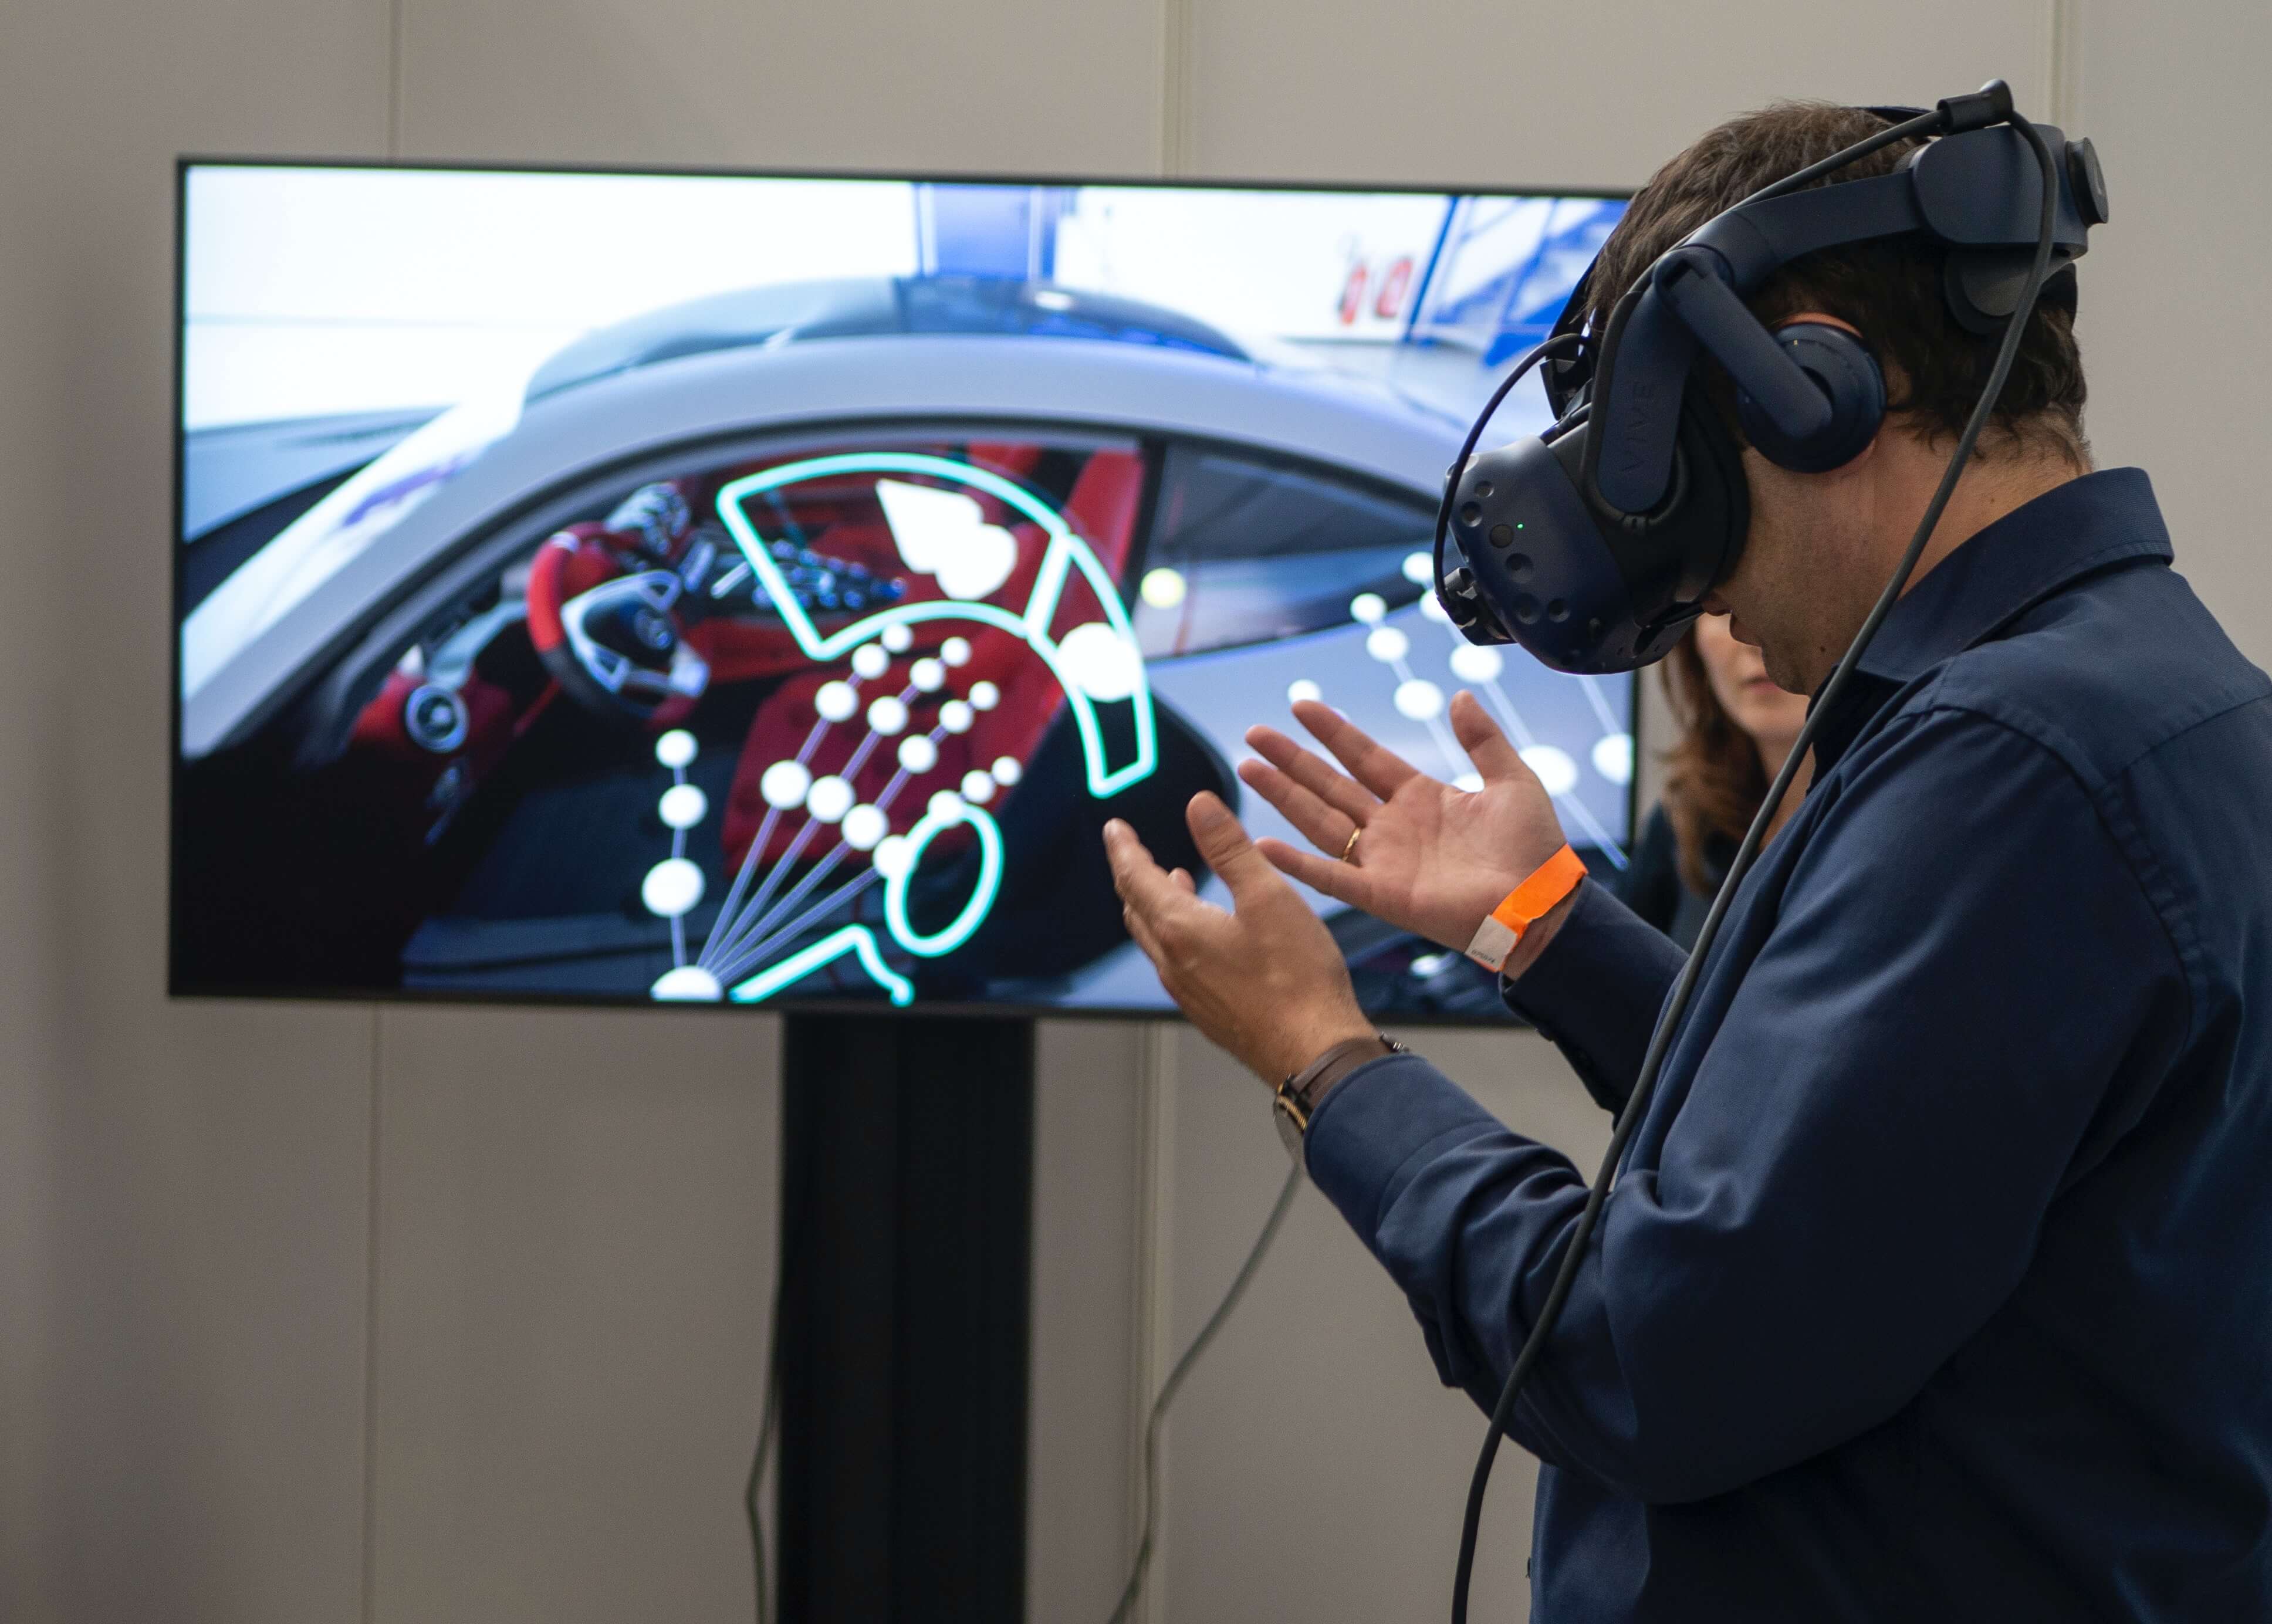 图片展示一位佩戴头戴式虚拟现实设备的人正在体验模拟的汽车内饰设计，似乎在进行交互式操作。